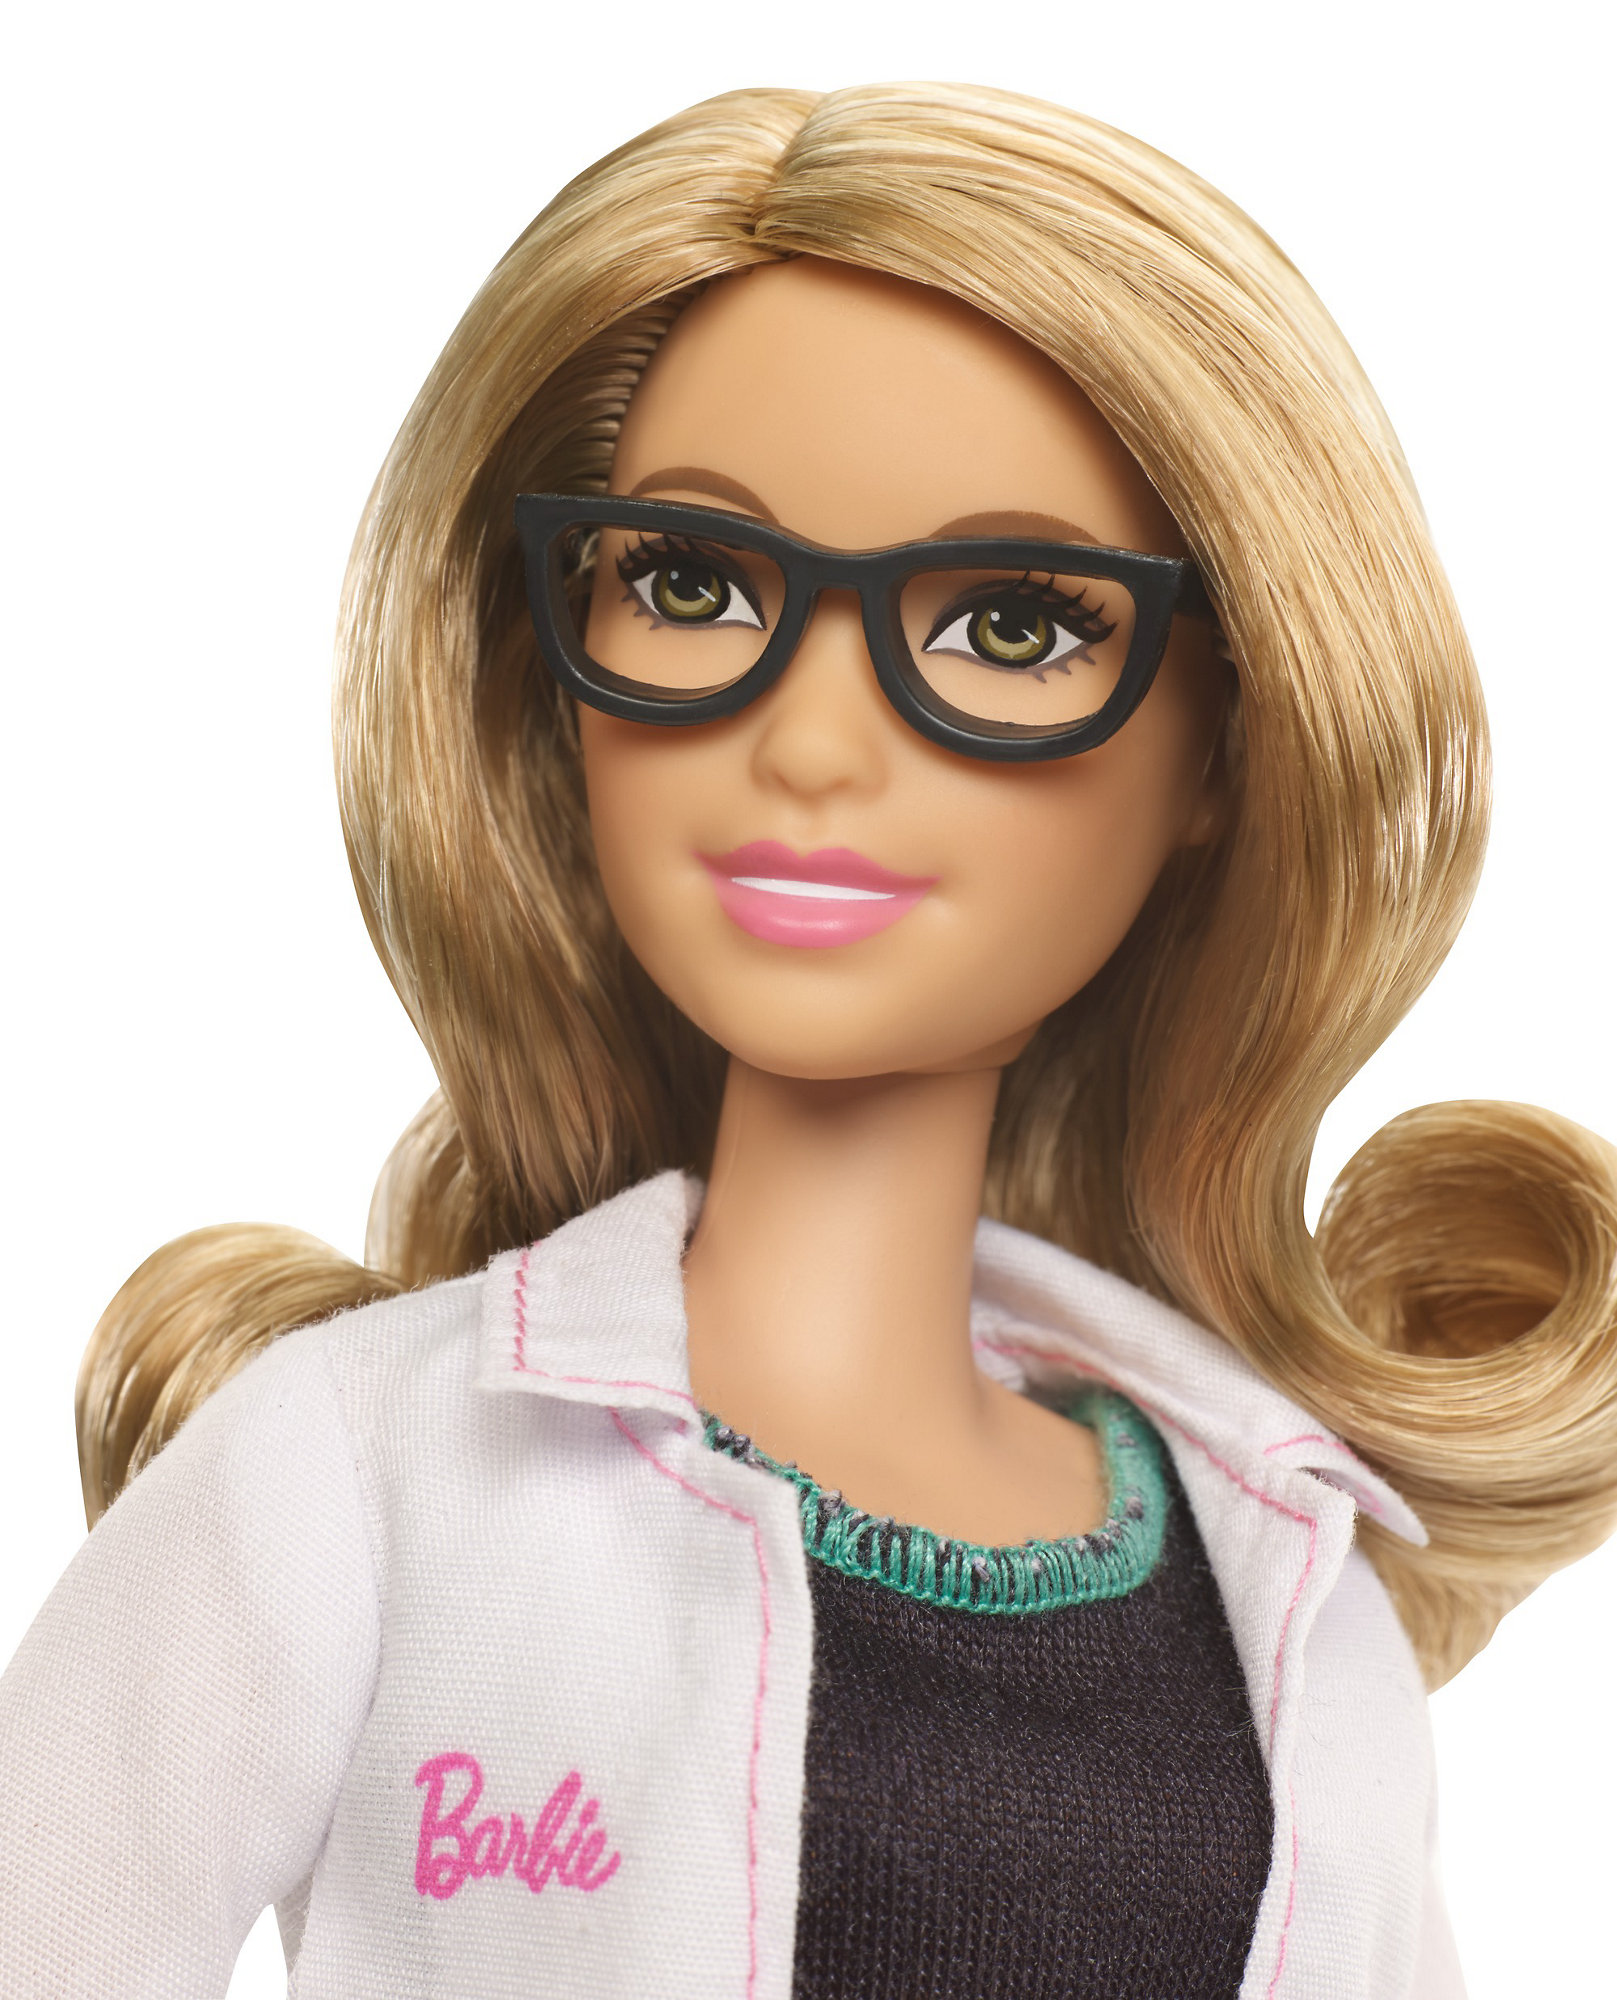 Barbie Doll Careers Eye Doctor - Walmart.com